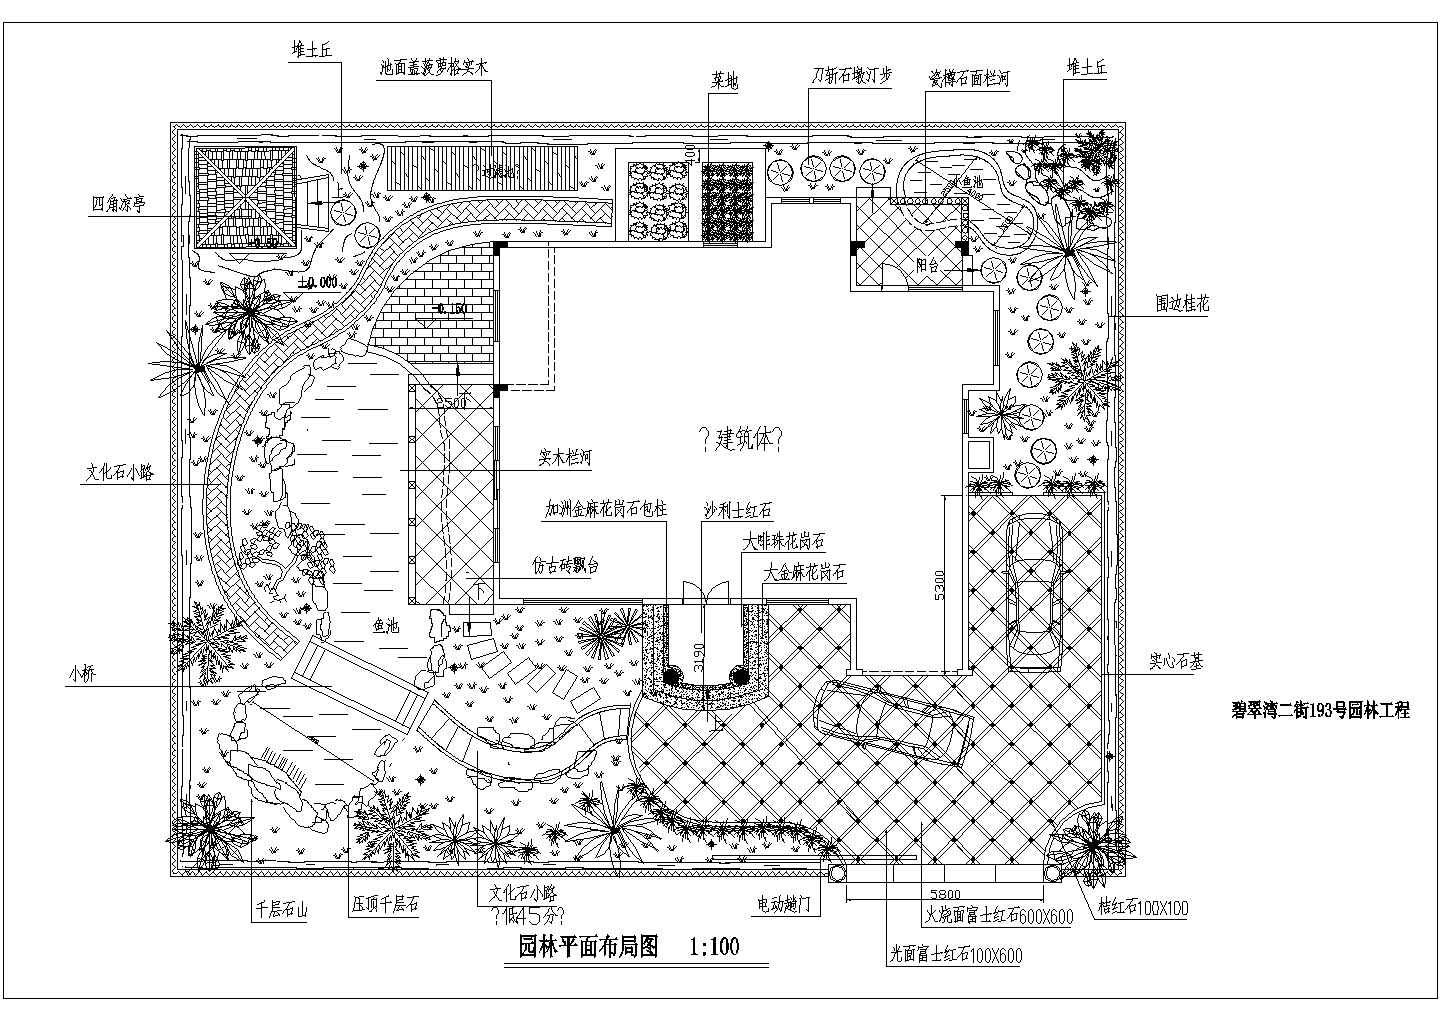 碧翠湾二街193号别墅园林景观施工图